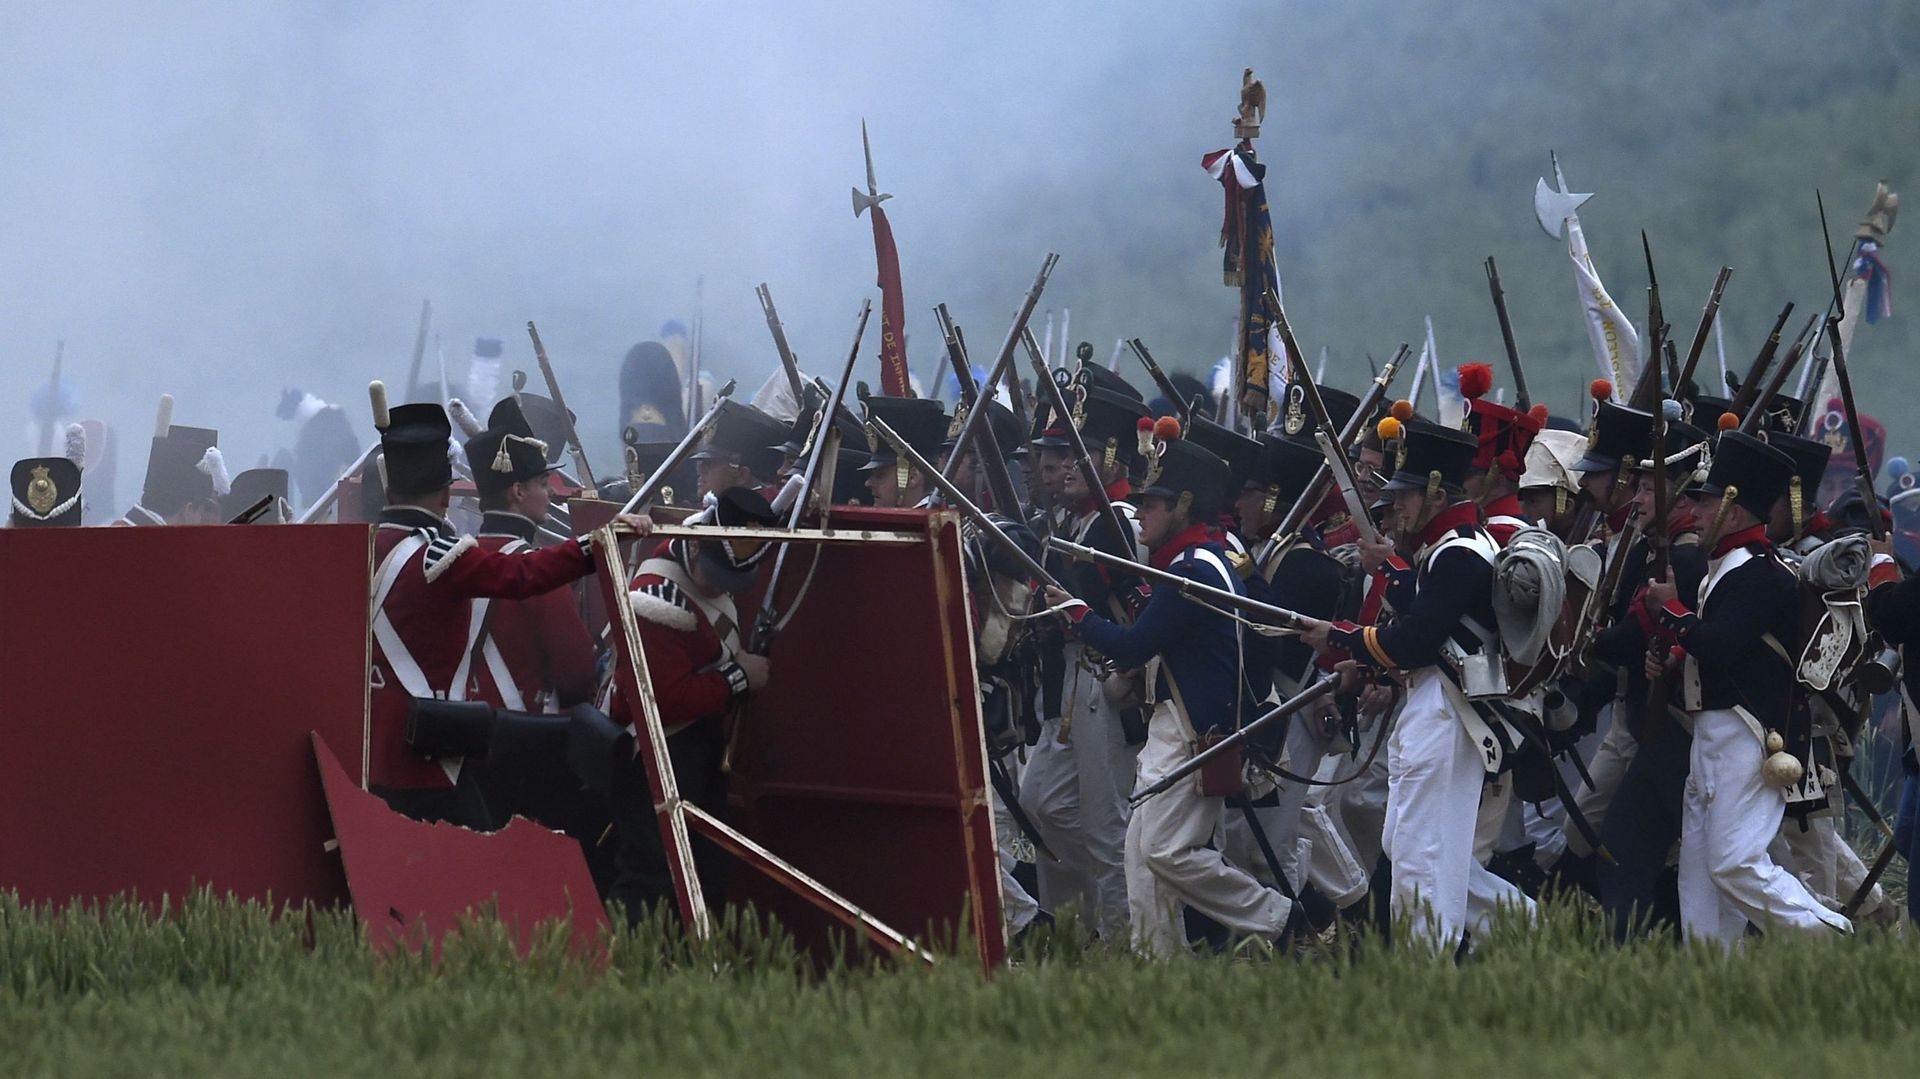 "Trop de fumée", "pas assez d'explications": la bataille de Waterloo a déçu certains